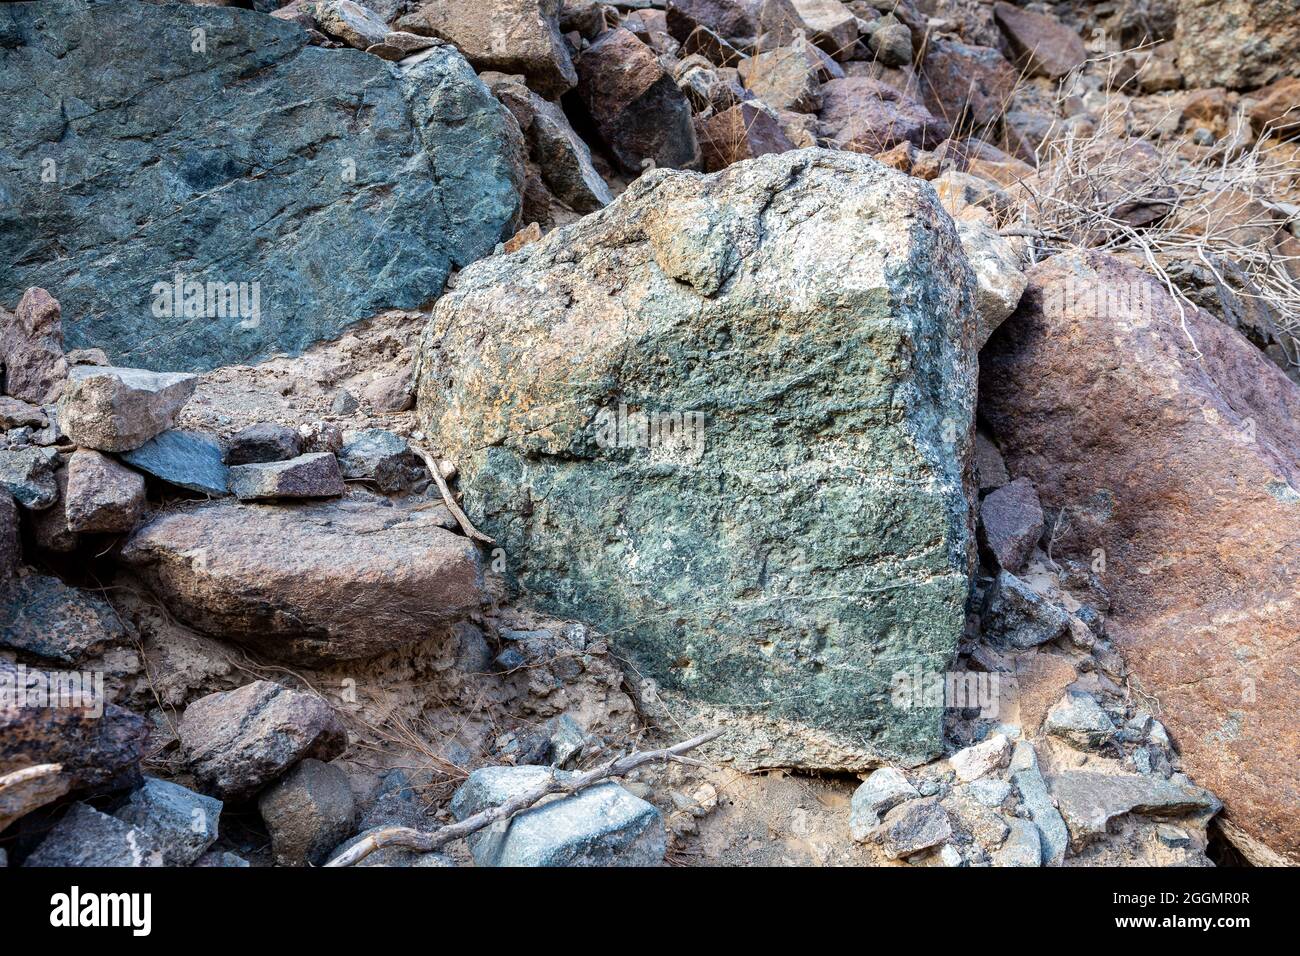 Rohes Erz aus Kupfer, grünen Steinen und kupferhaltigen Gesteinen im alten Bergbaugebiet, in den Bergen des Gebirges von Hagar, Vereinigte Arabische Emirate. Stockfoto